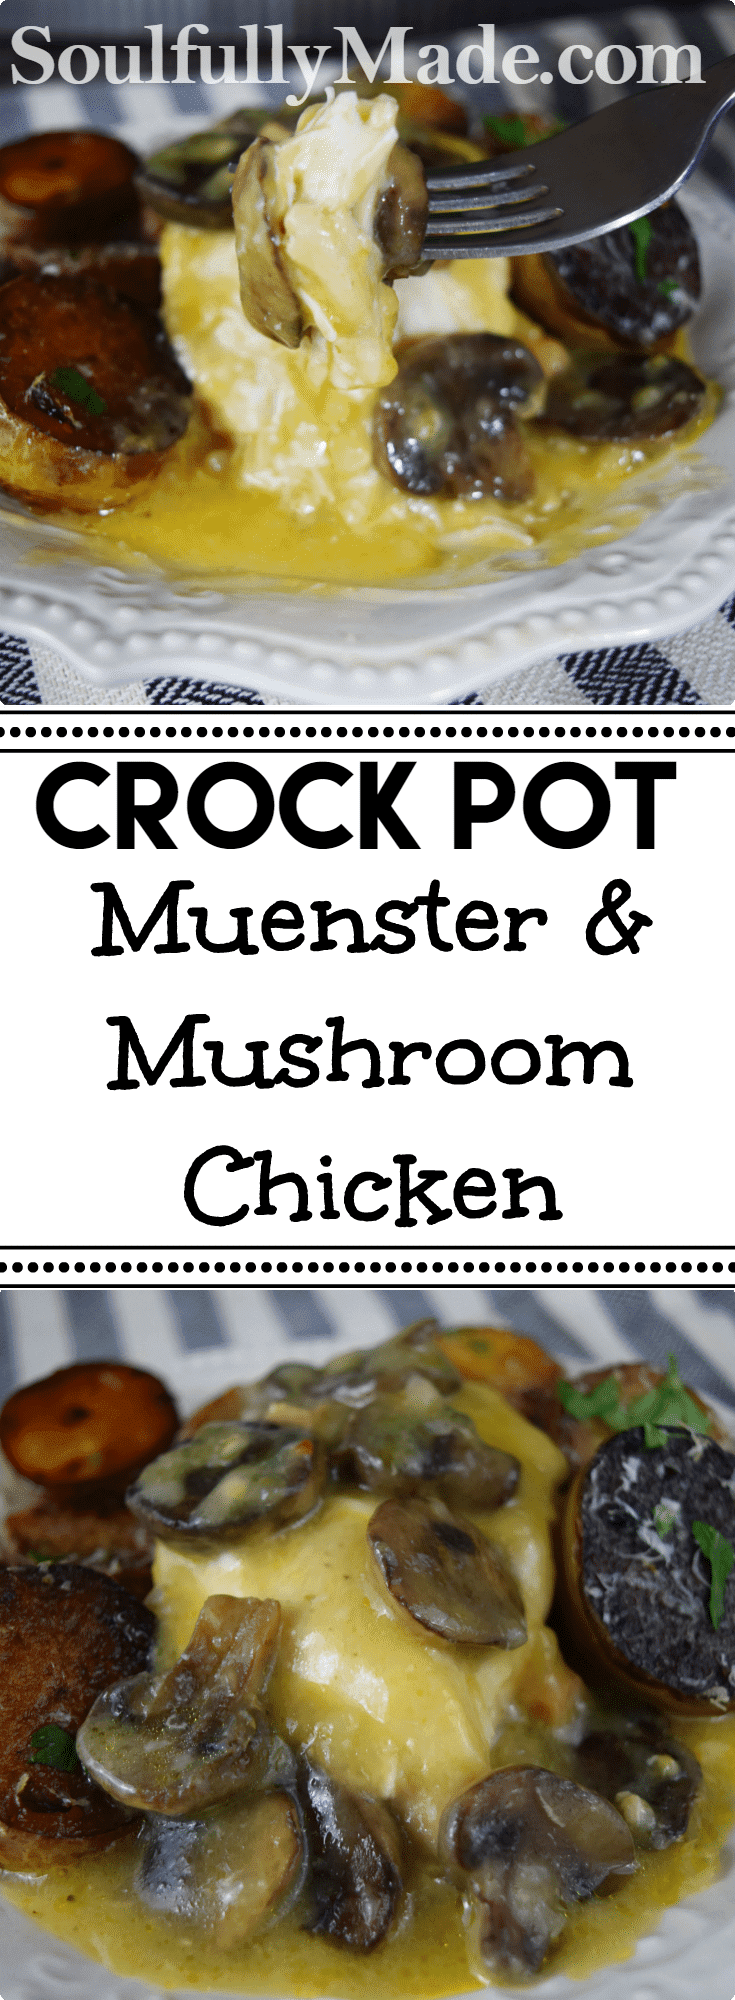 Crock Pot Muenster & Mushroom Chicken